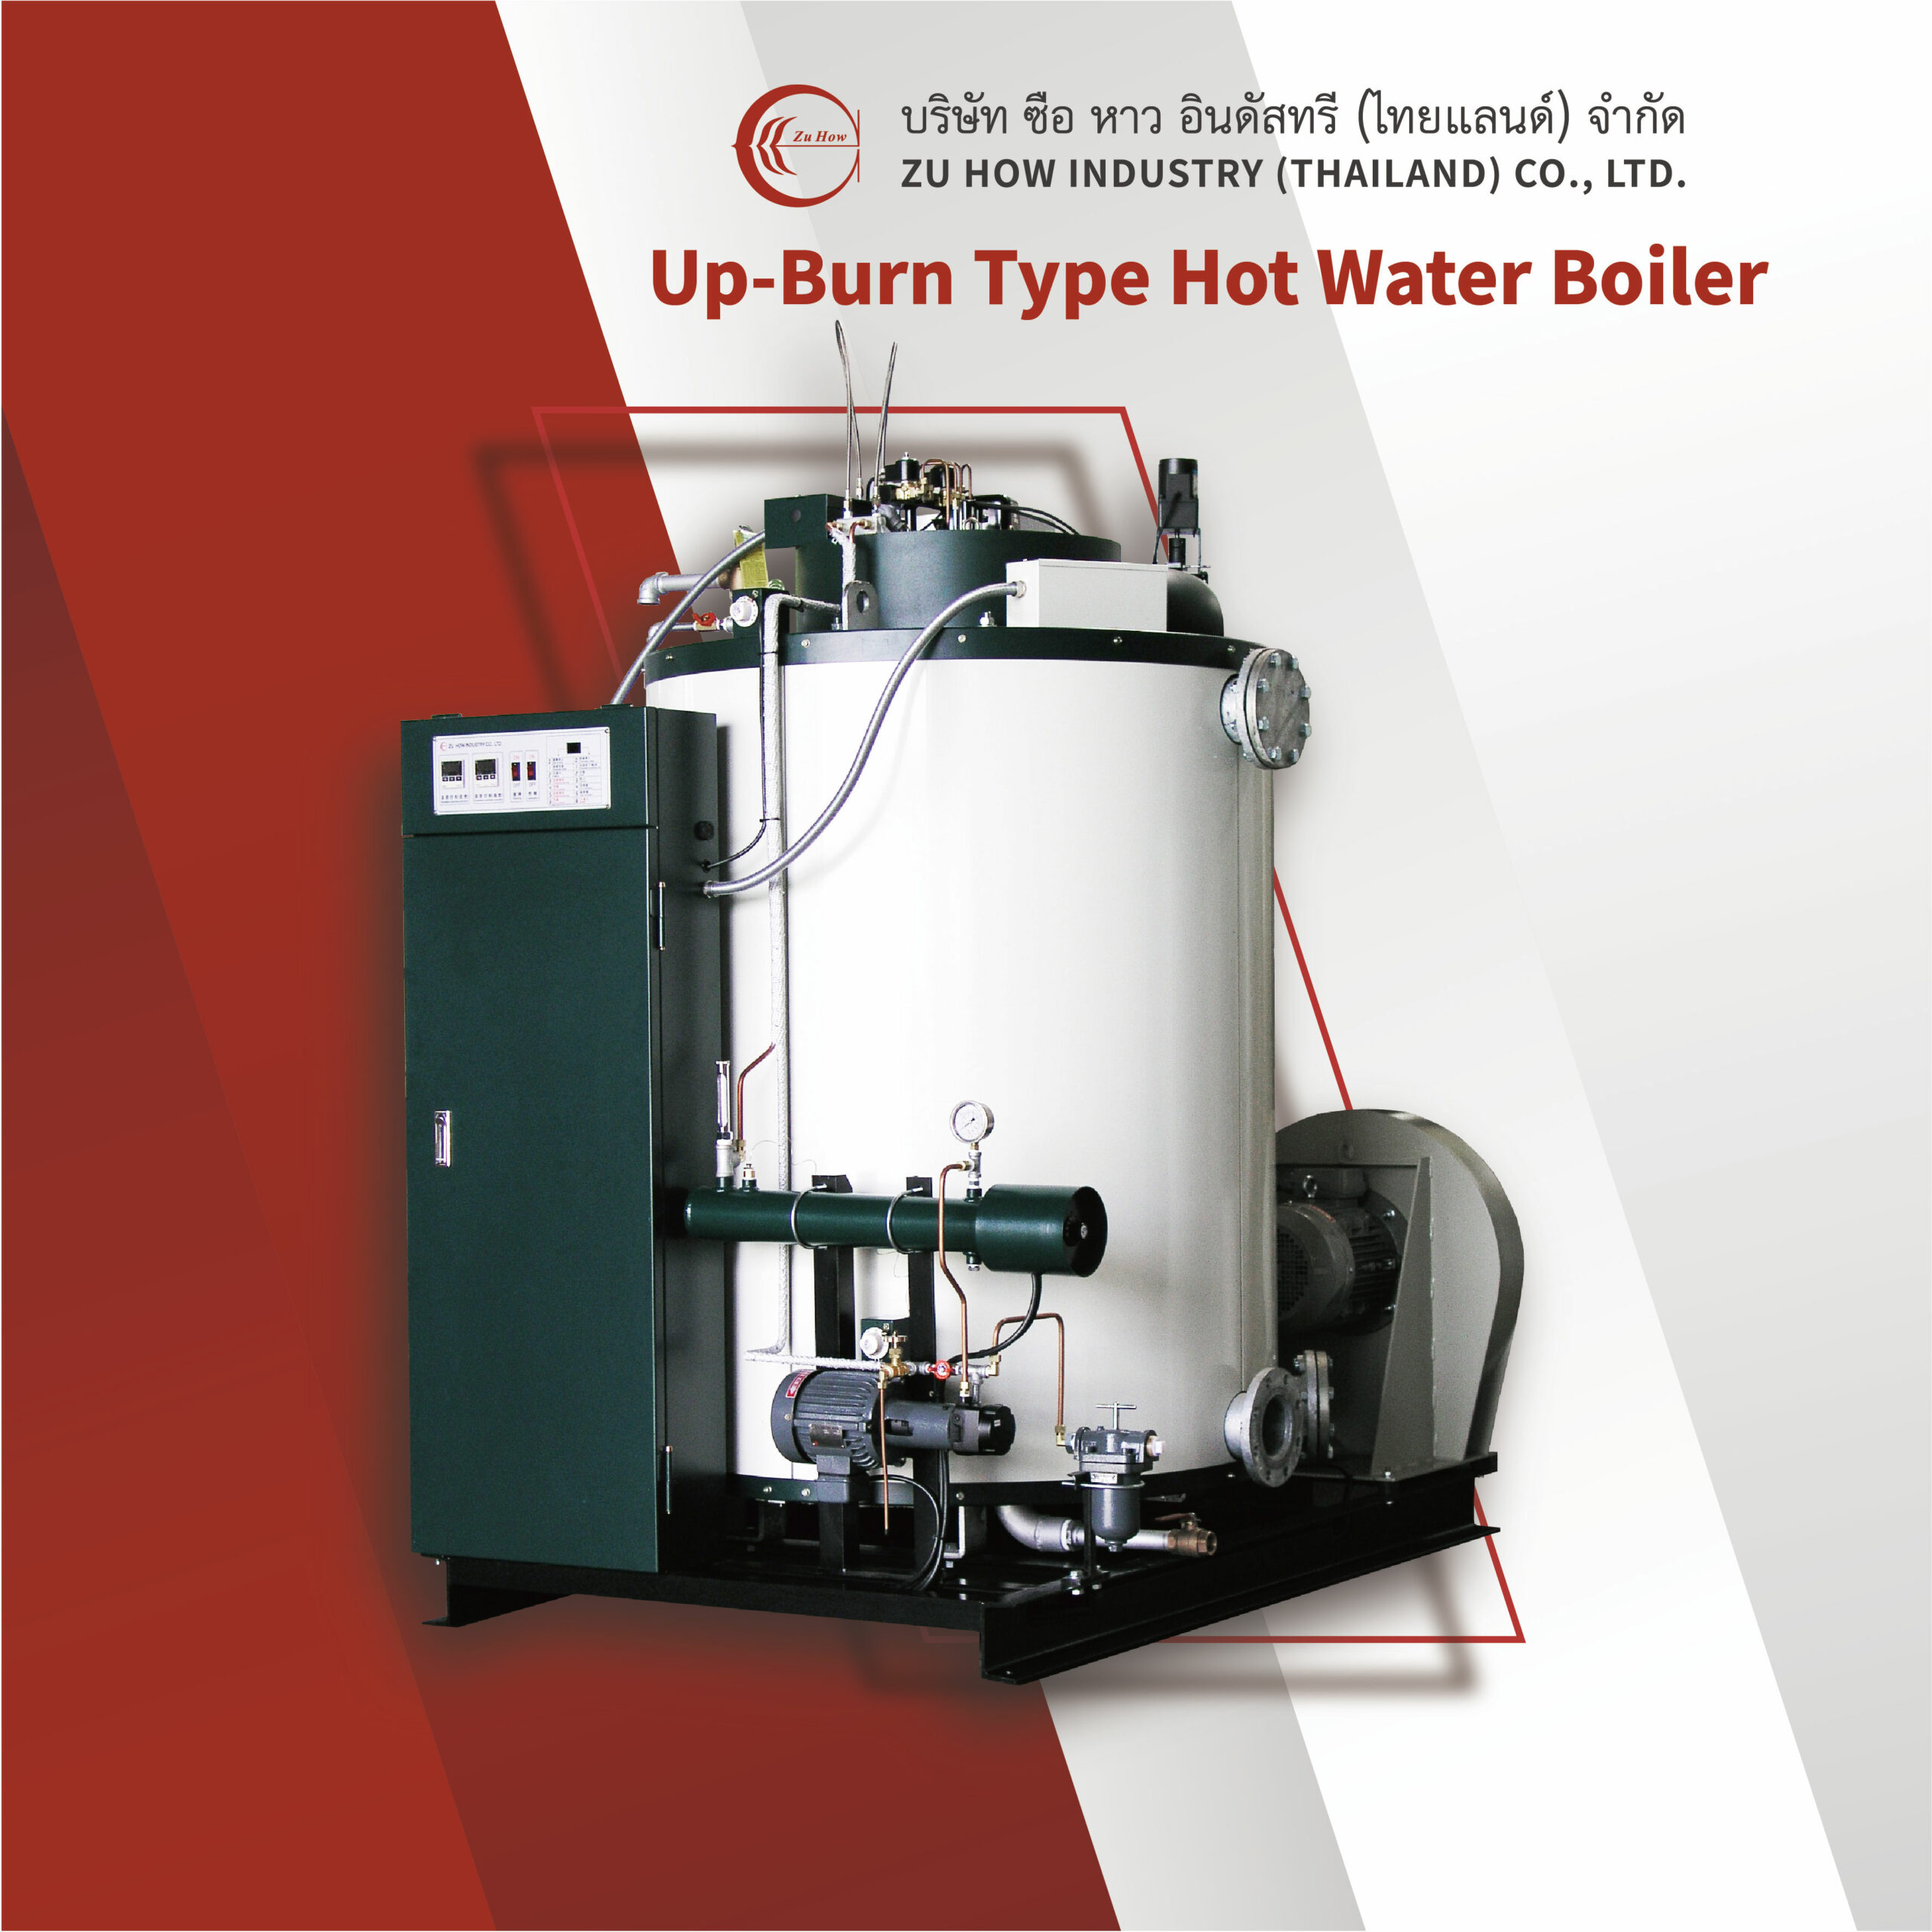 Up-Burn Type Hot Water Boiler